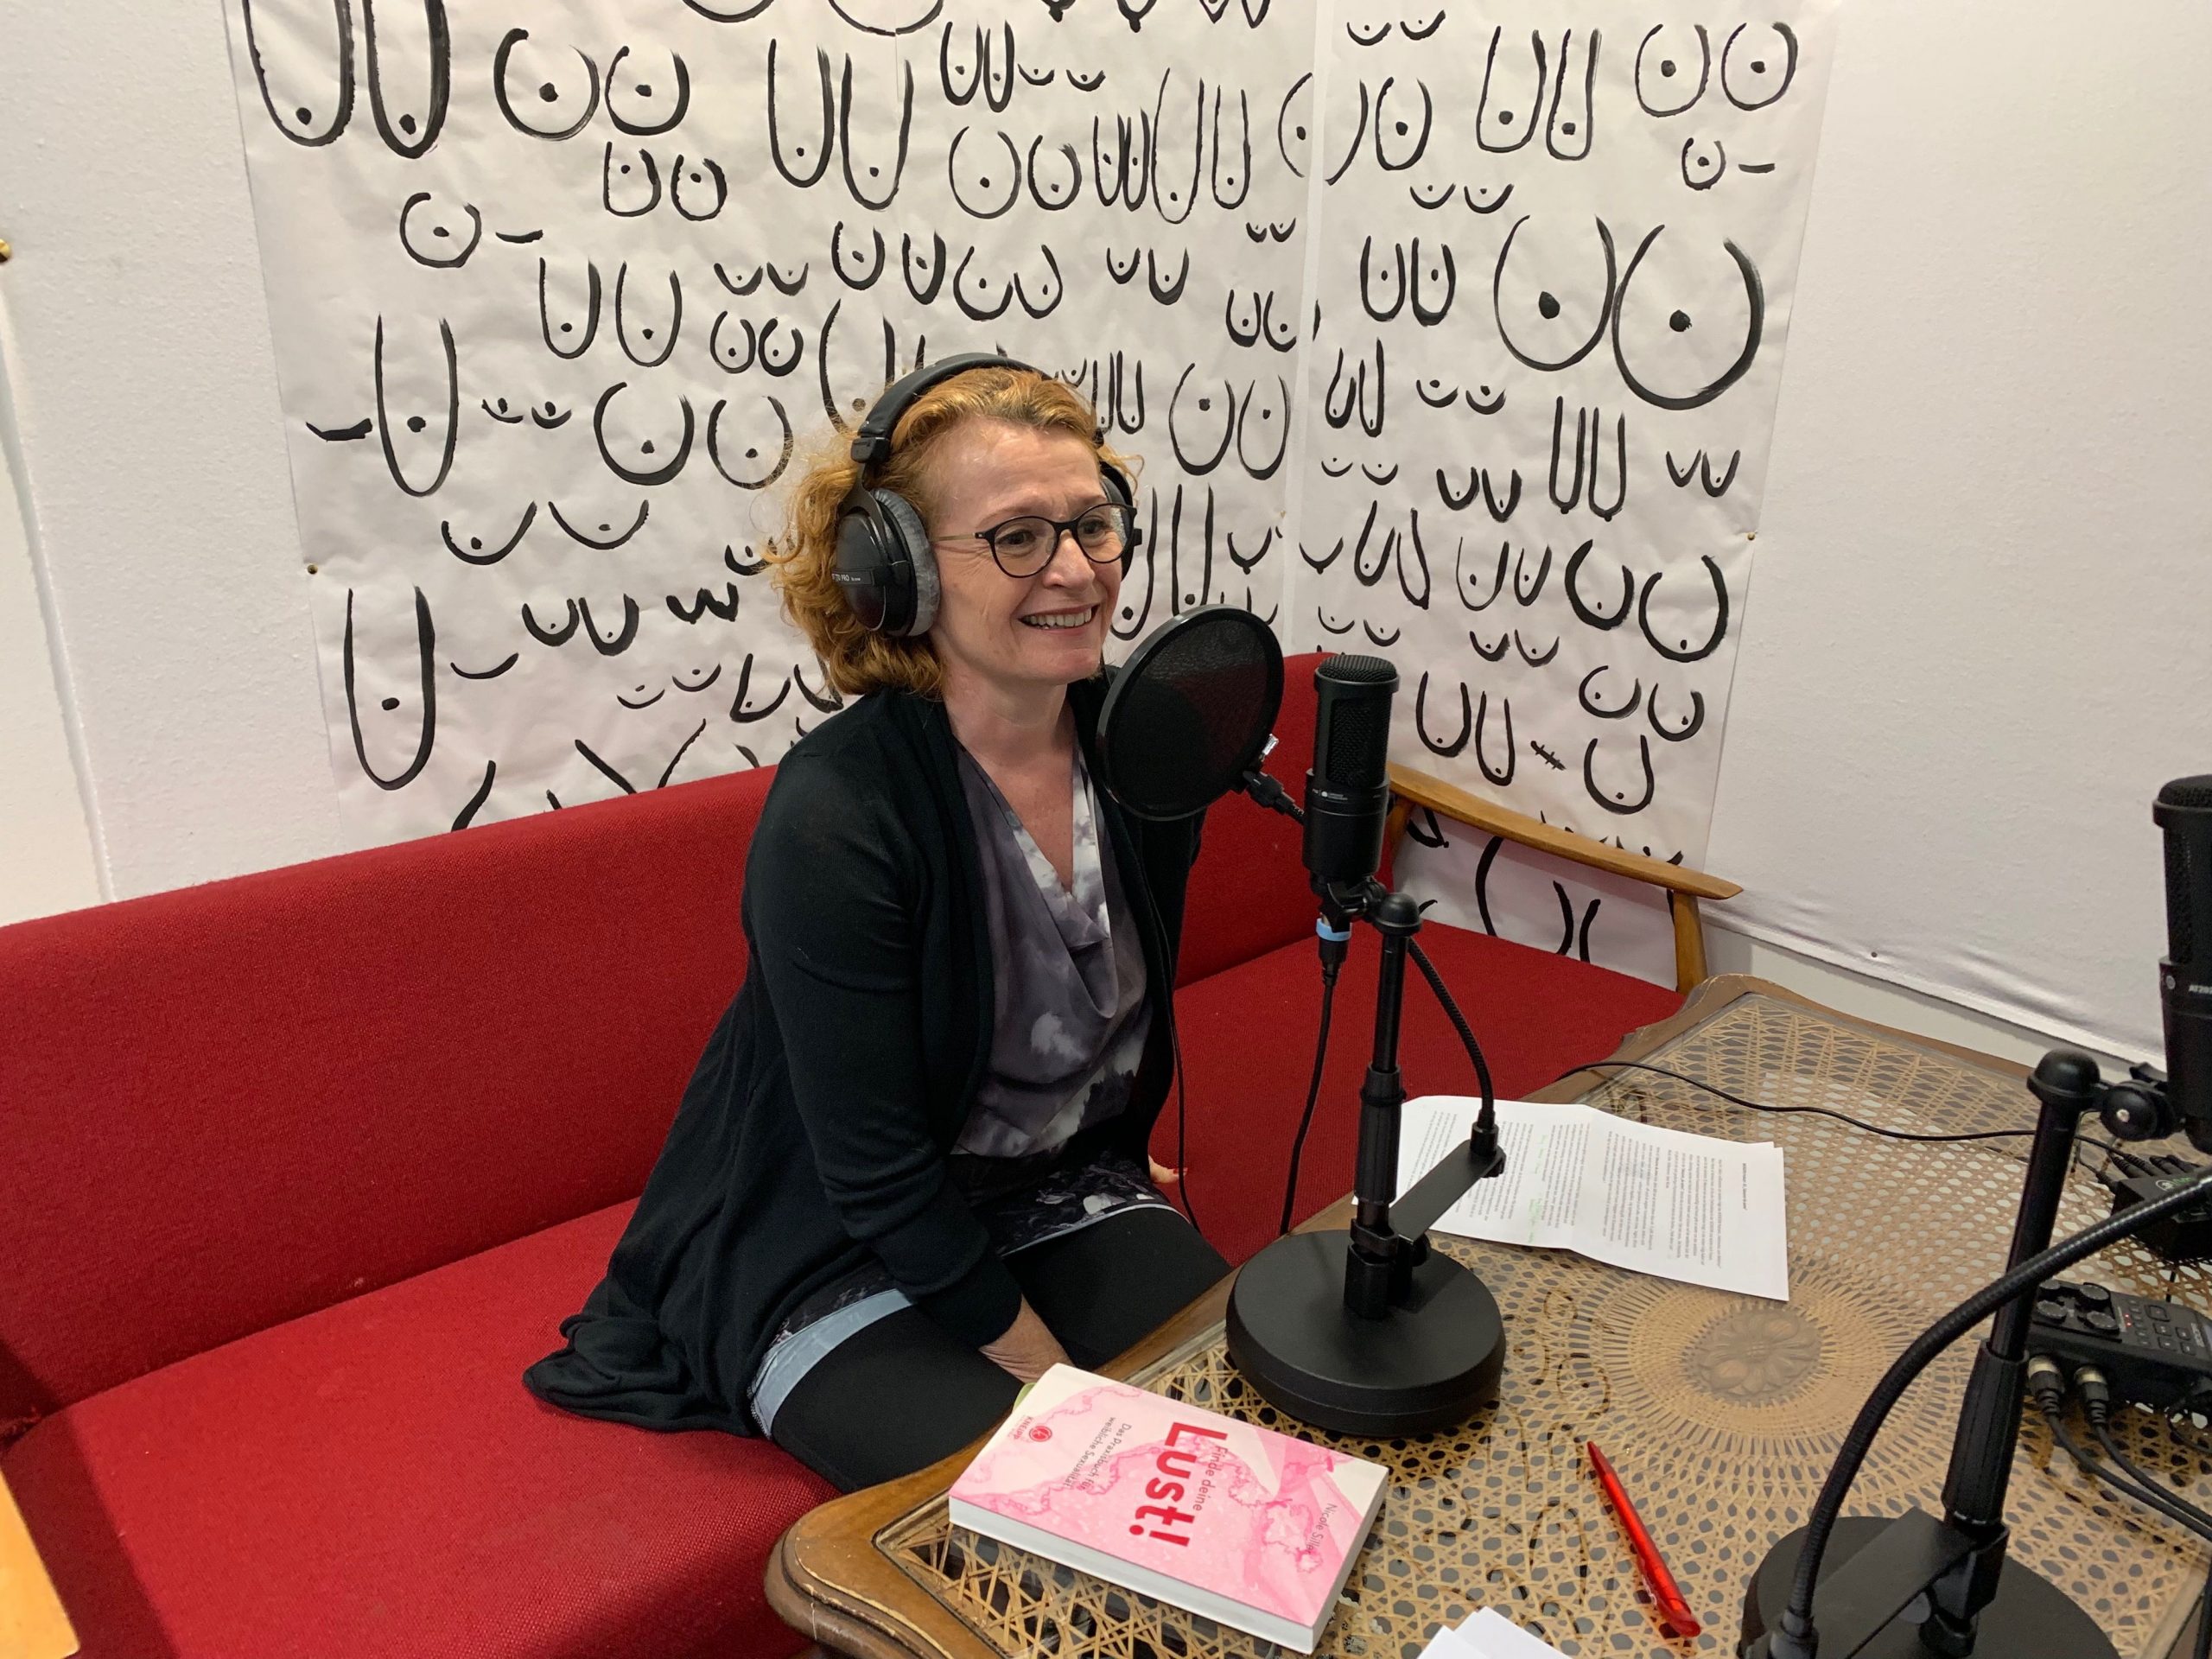 WIENERIN - Finde deine Lust! - der Podcast im Juni 2019 mit Nicole Siller